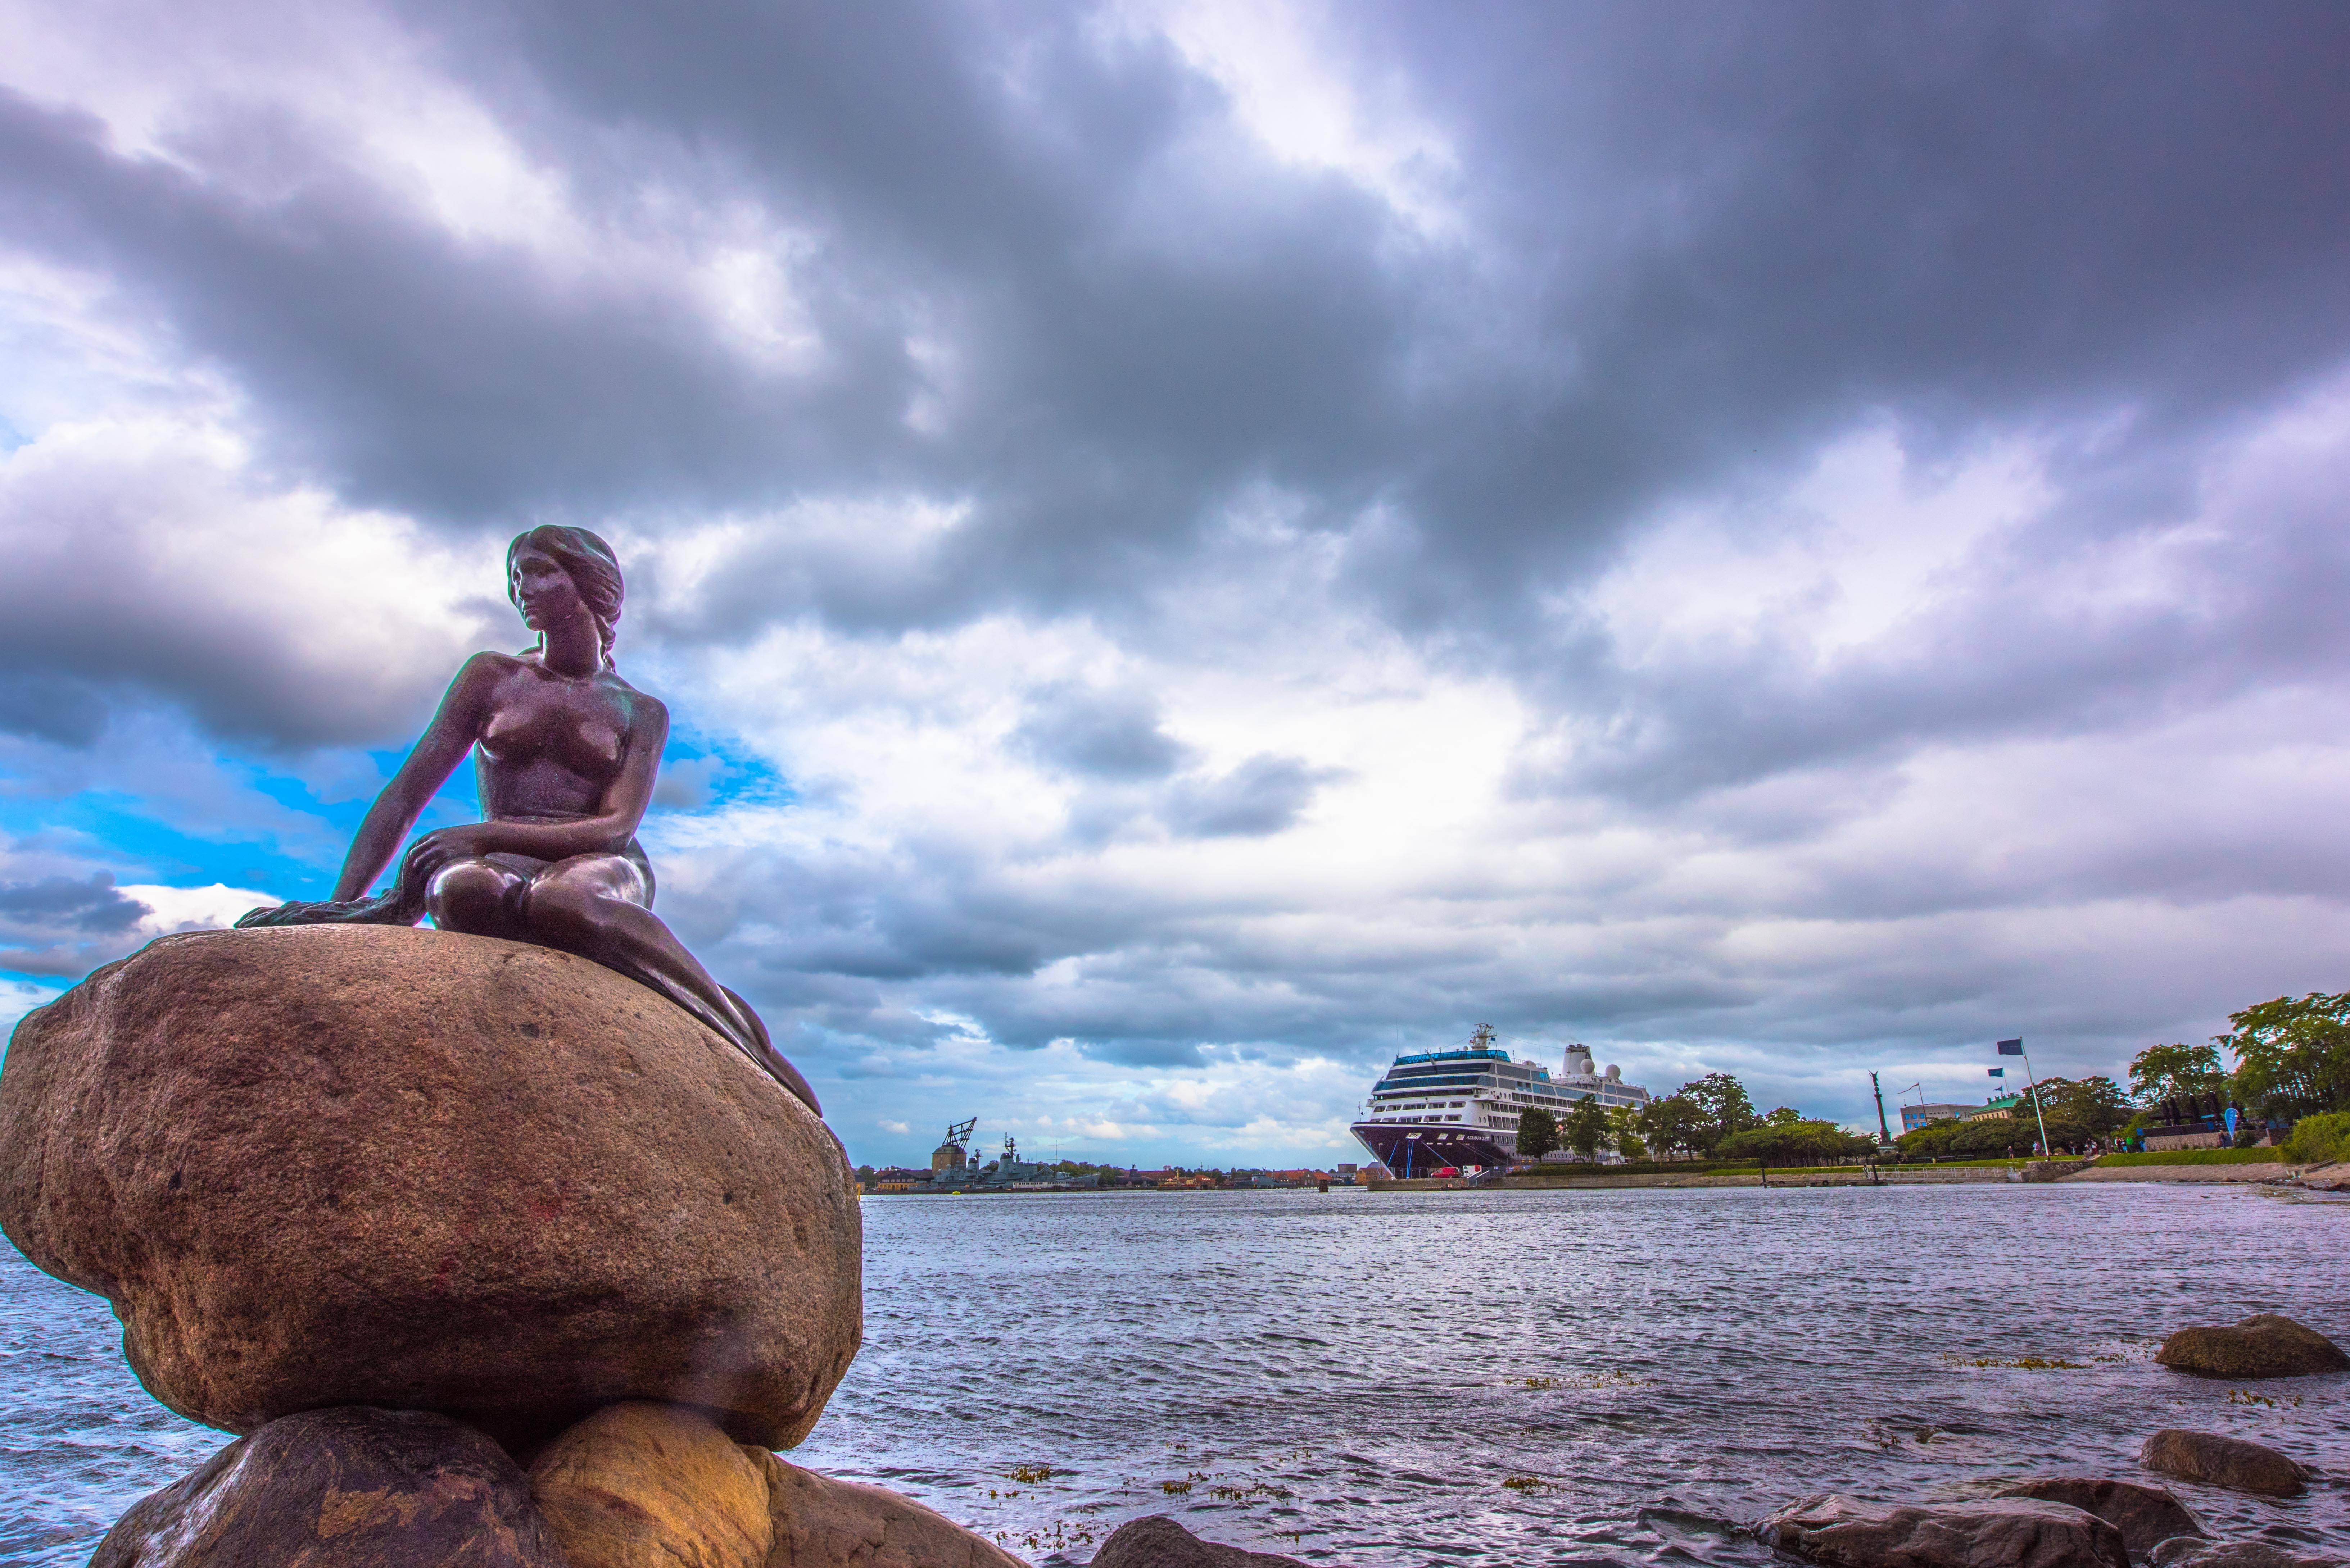 丹麦国宝雕塑小美人鱼详述她背后的故事